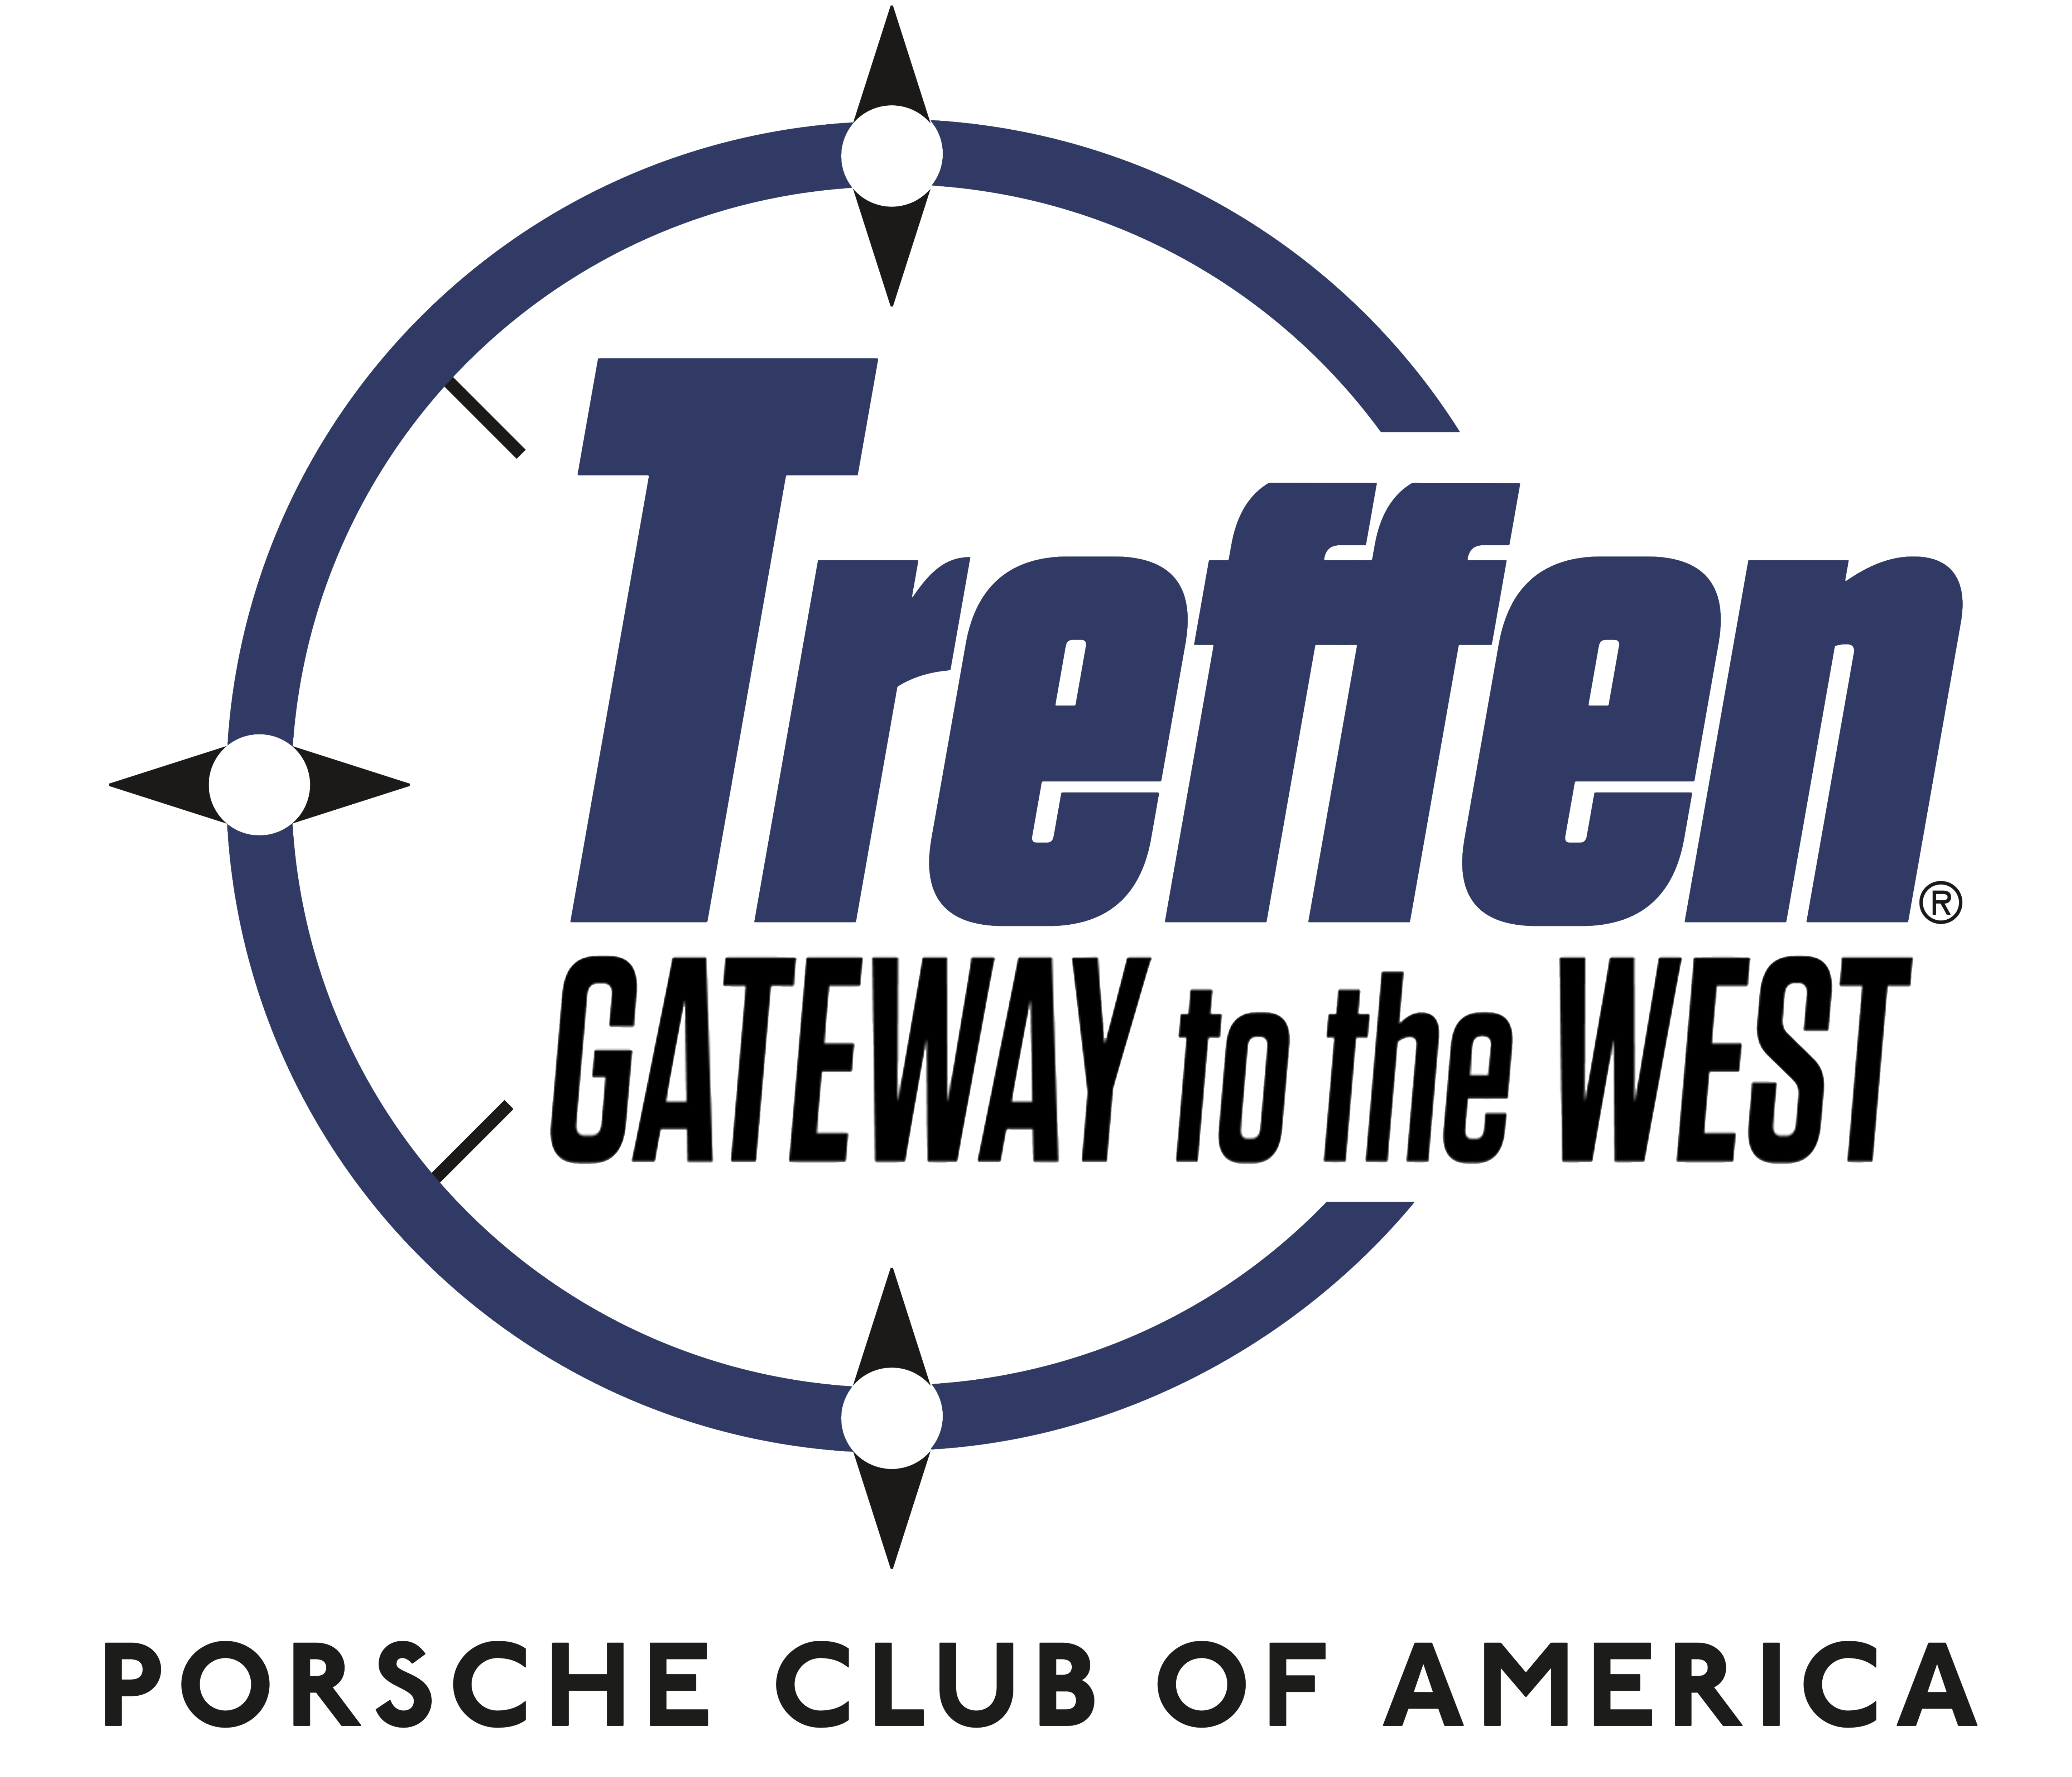 Porsche Club of America Event - Treffen Gateway to the West